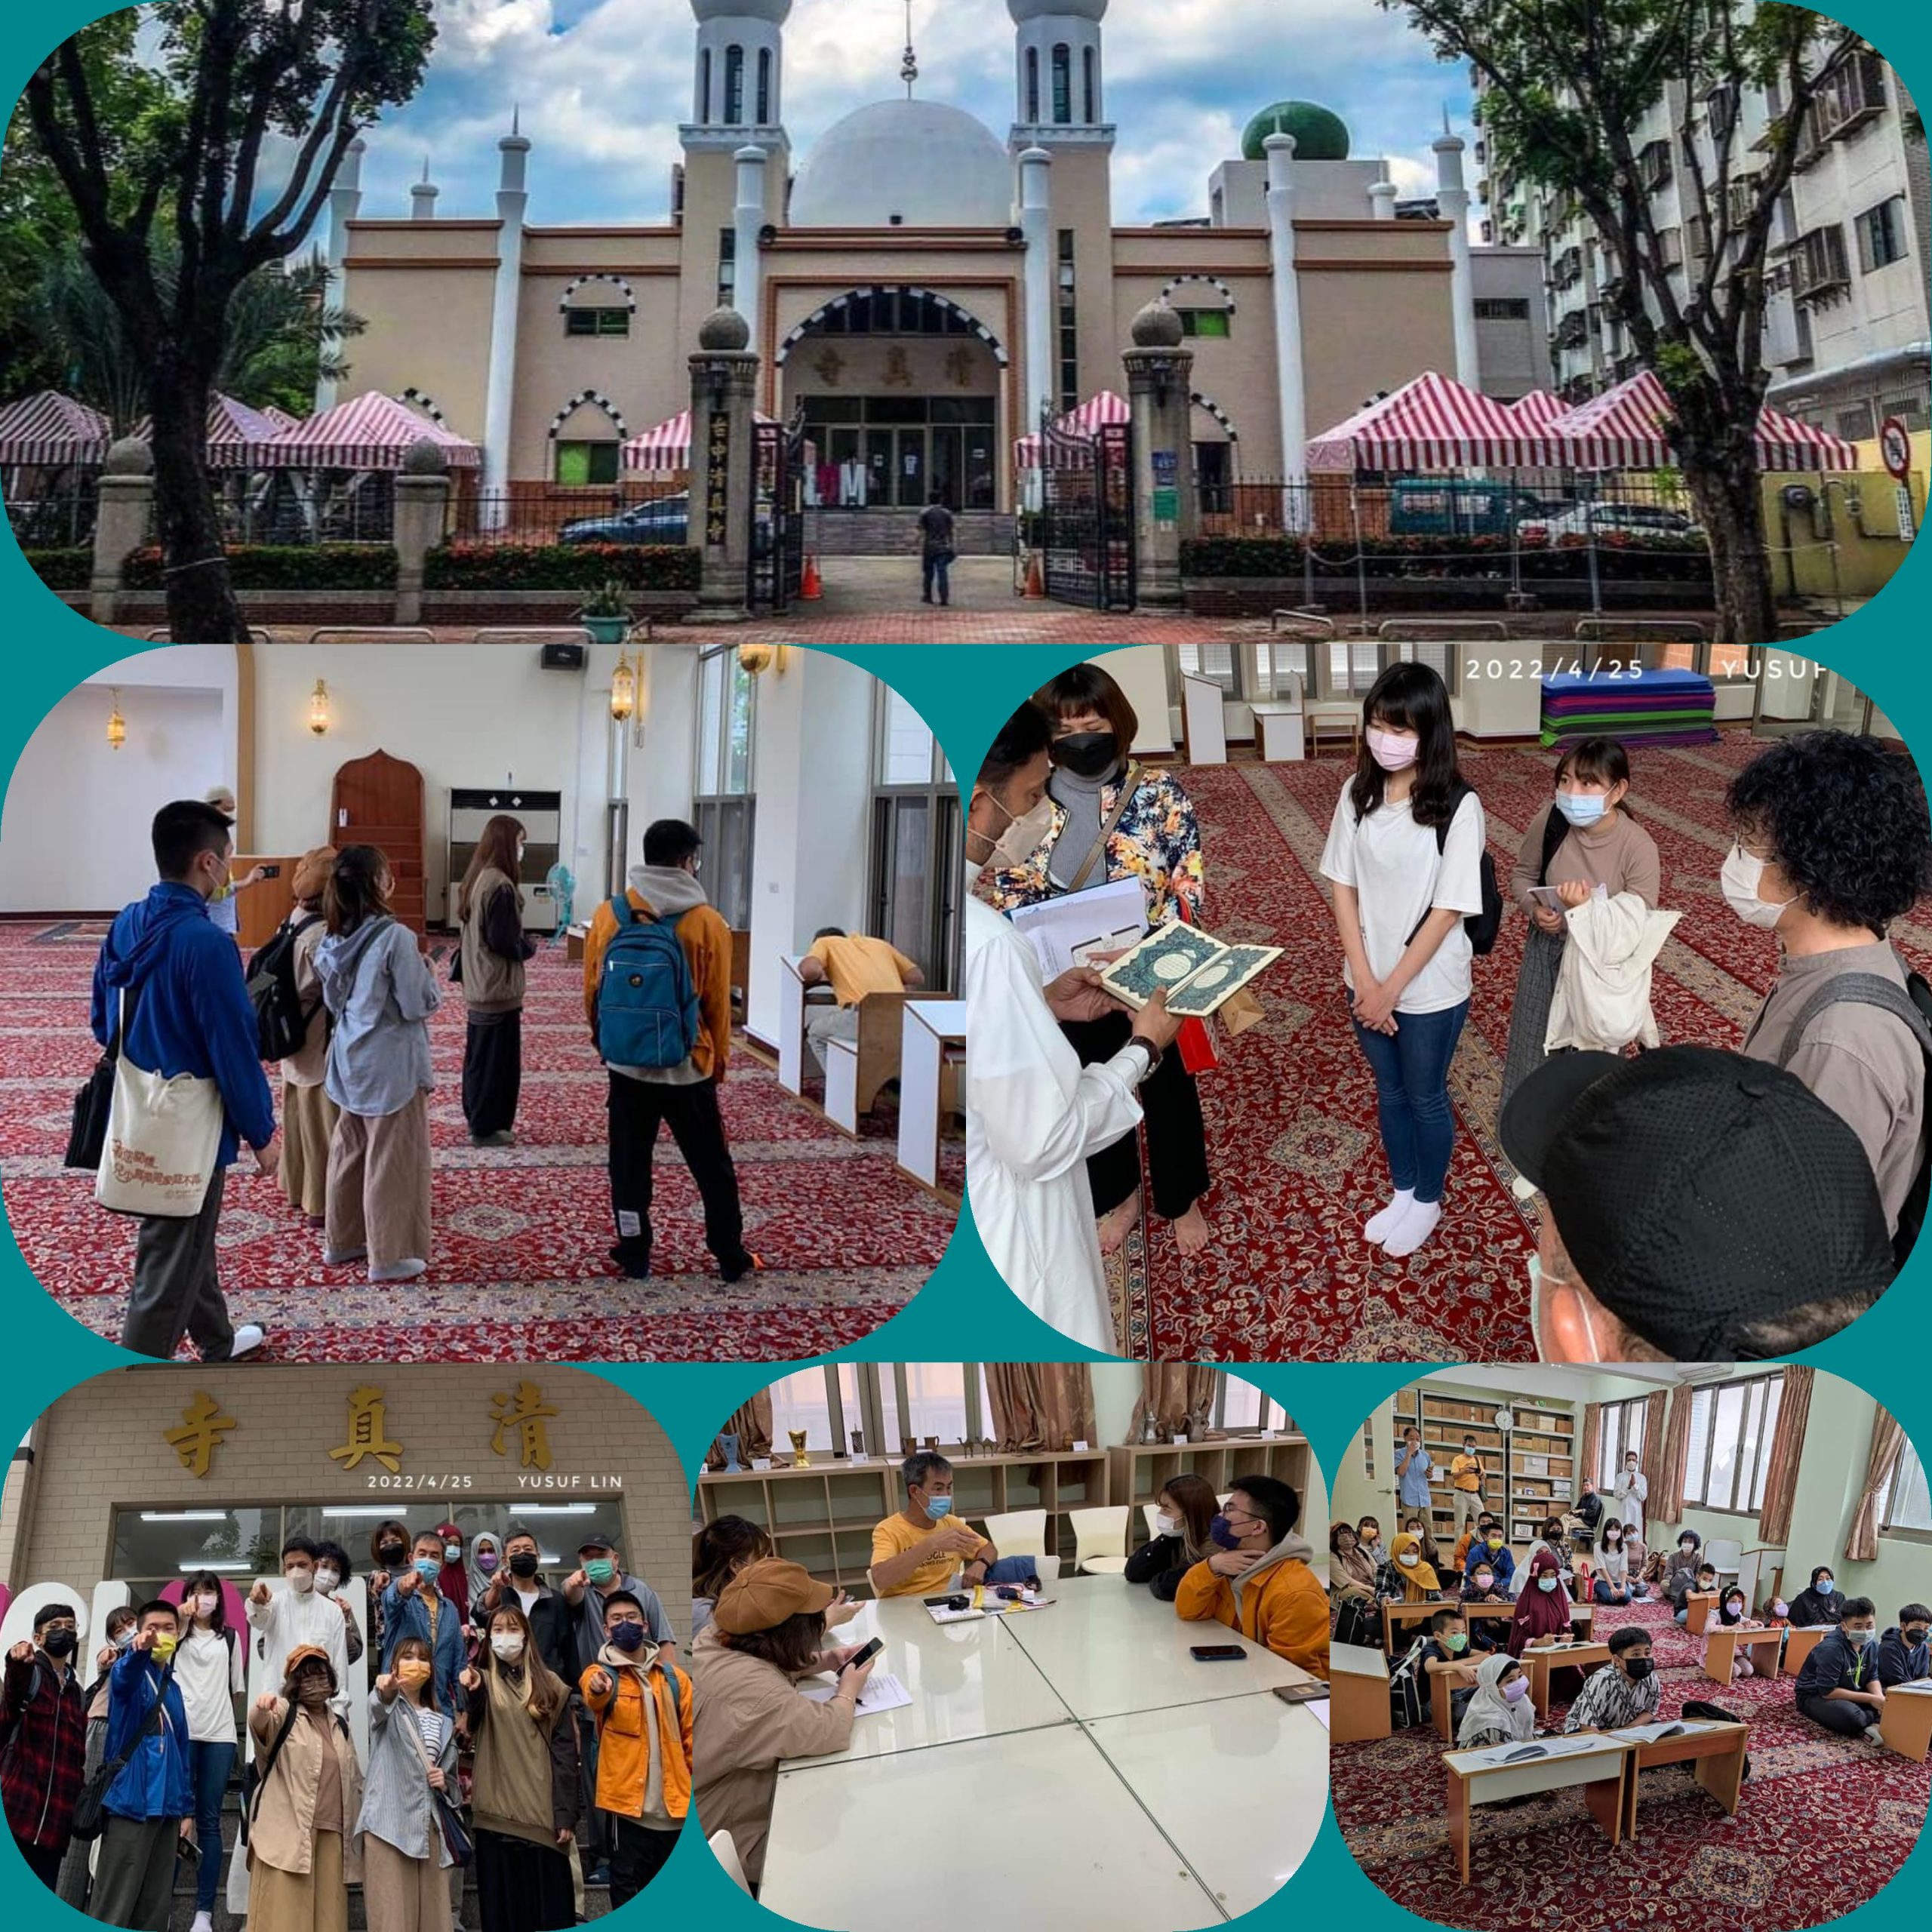 أعرب طلبة جامعة جي نان عن سعادتهم بهذه الفرصة "النادرة" للتعرف على الإسلام خلال زيارتهم لمسجد تايجون وأبدى بعضهم رغبته في معاودة زيارة المسجد